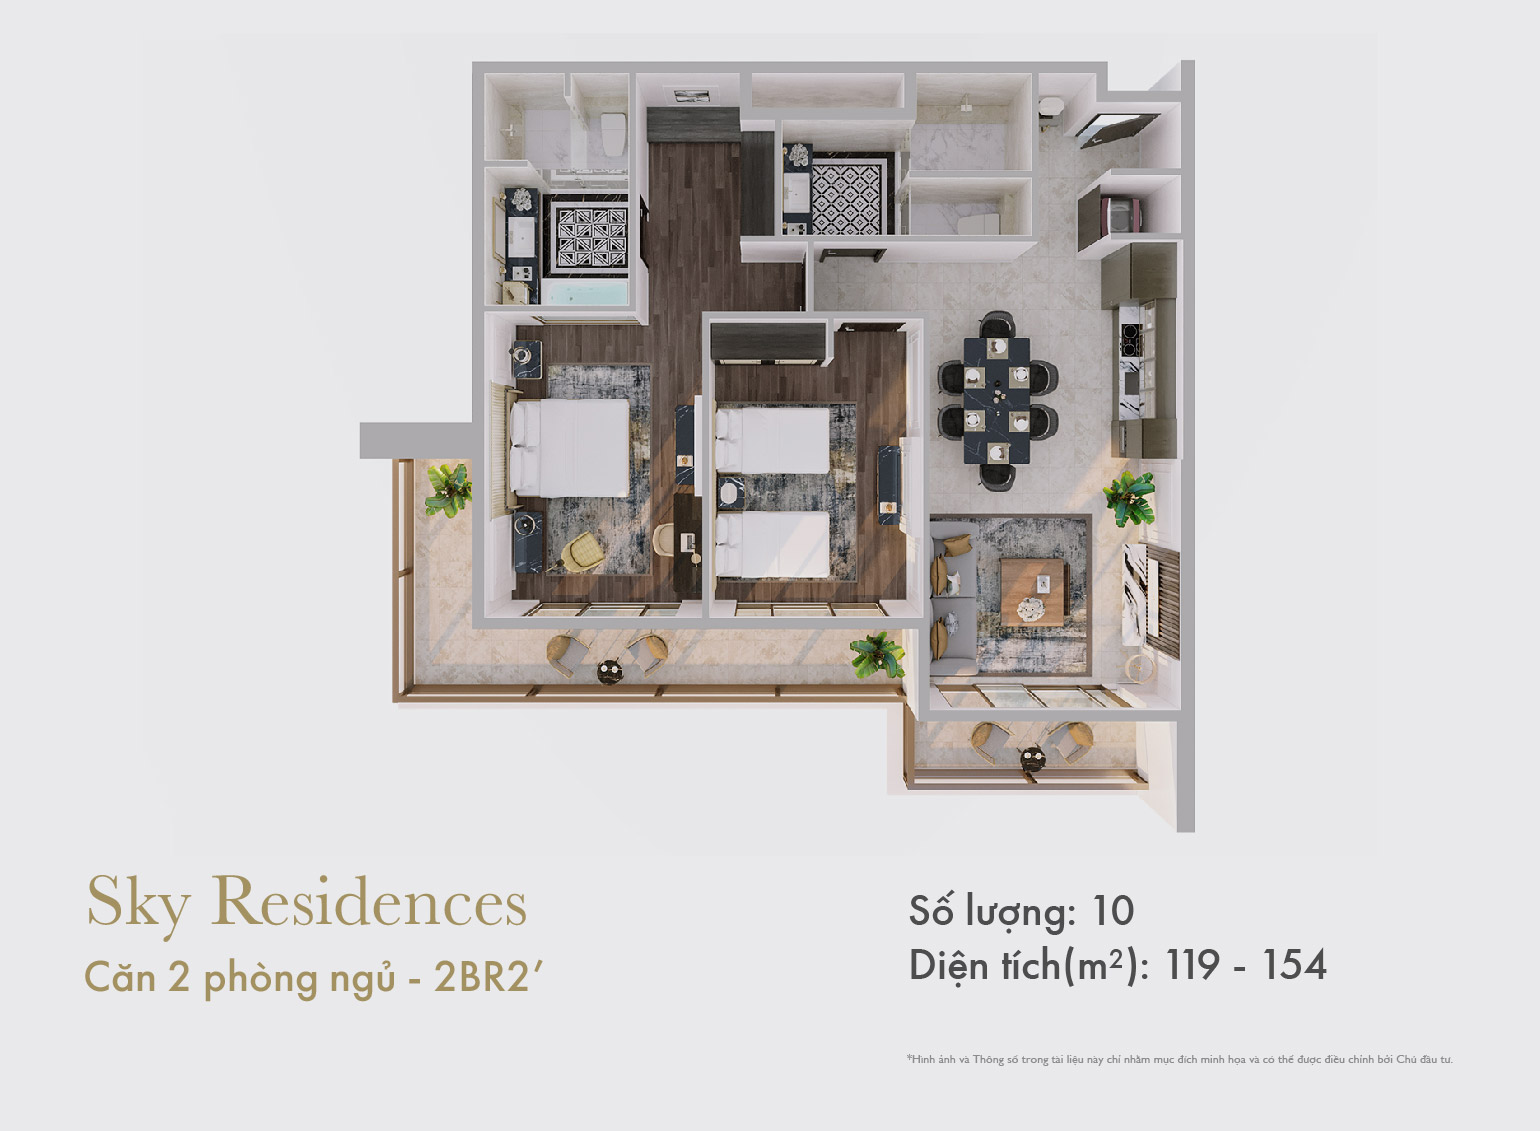 Sky Residences - Mặt bằng căn 2 phòng ngủ mẫu 2 dạng 1